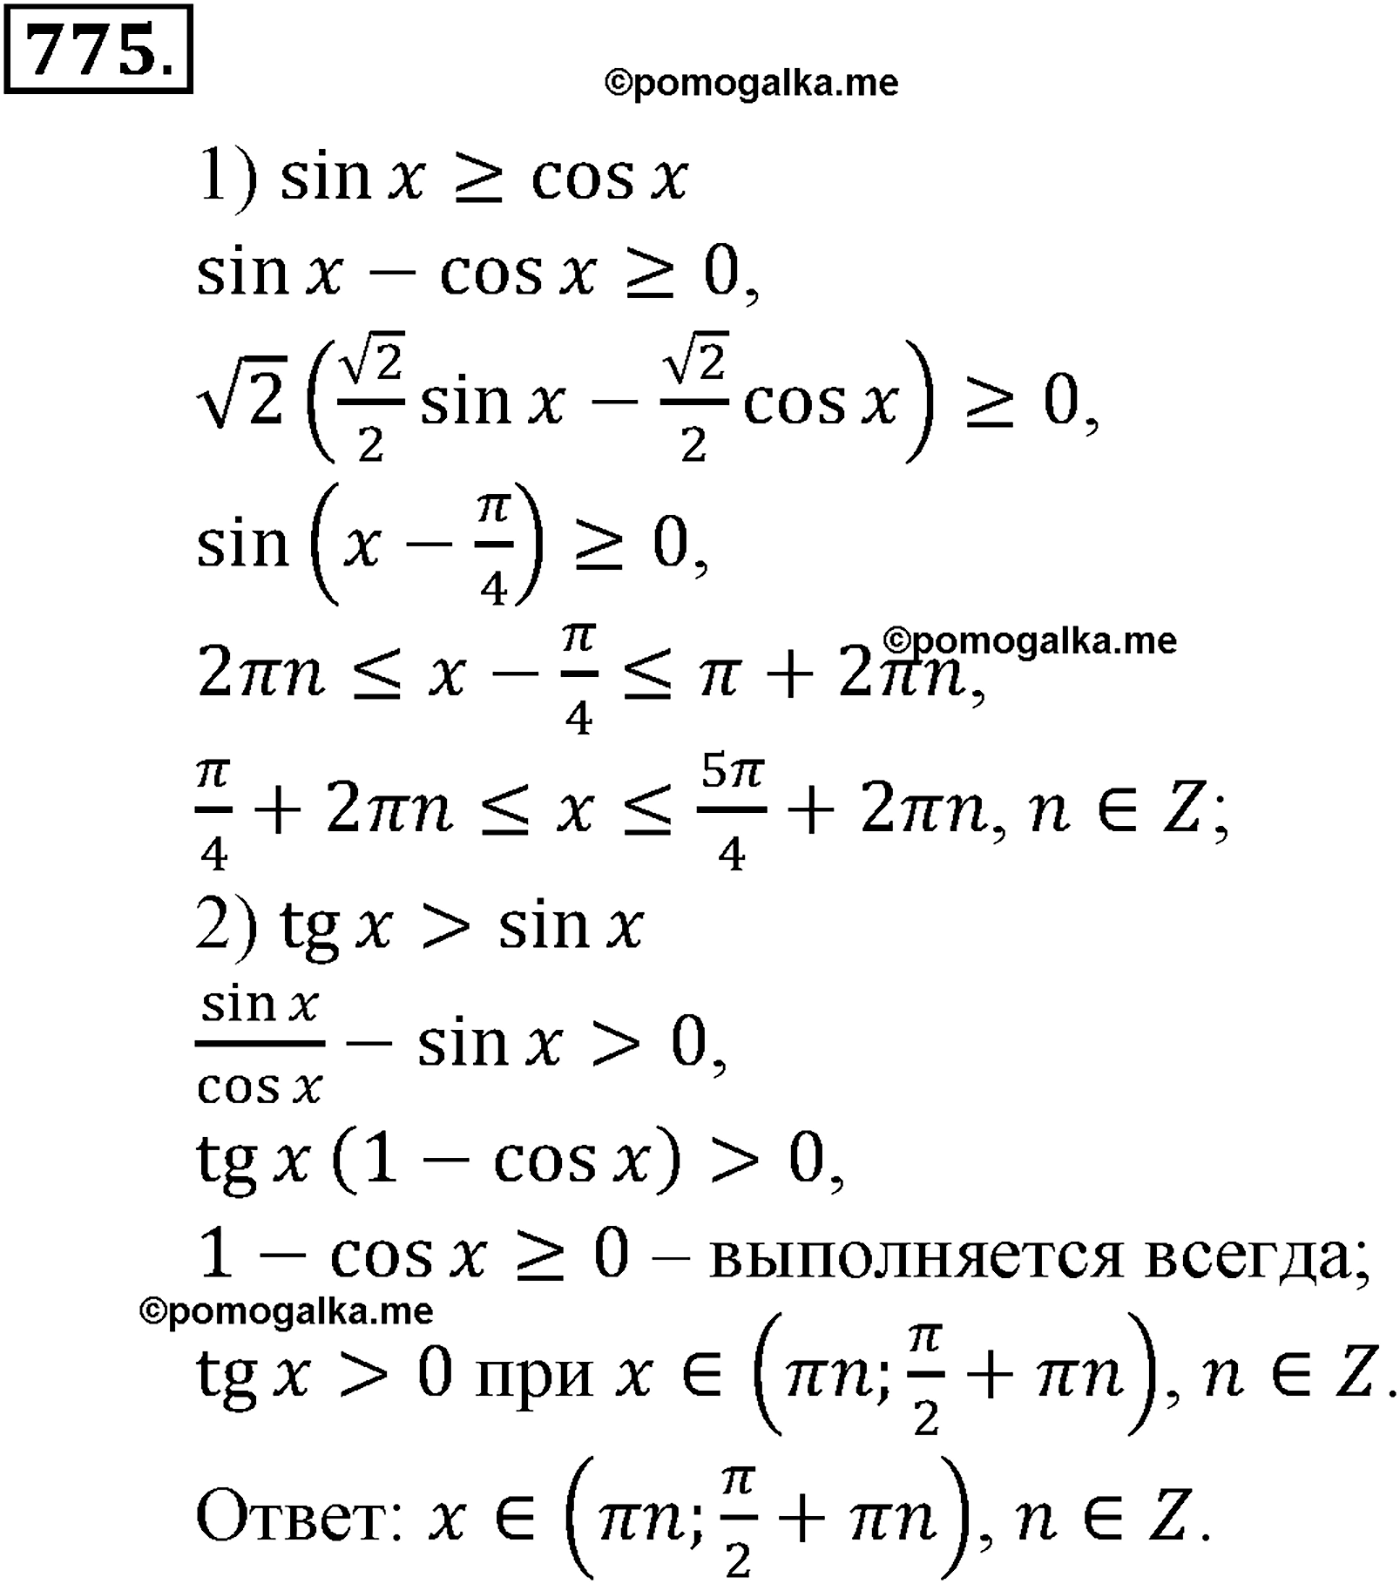 разбор задачи №775 по алгебре за 10-11 класс из учебника Алимова, Колягина